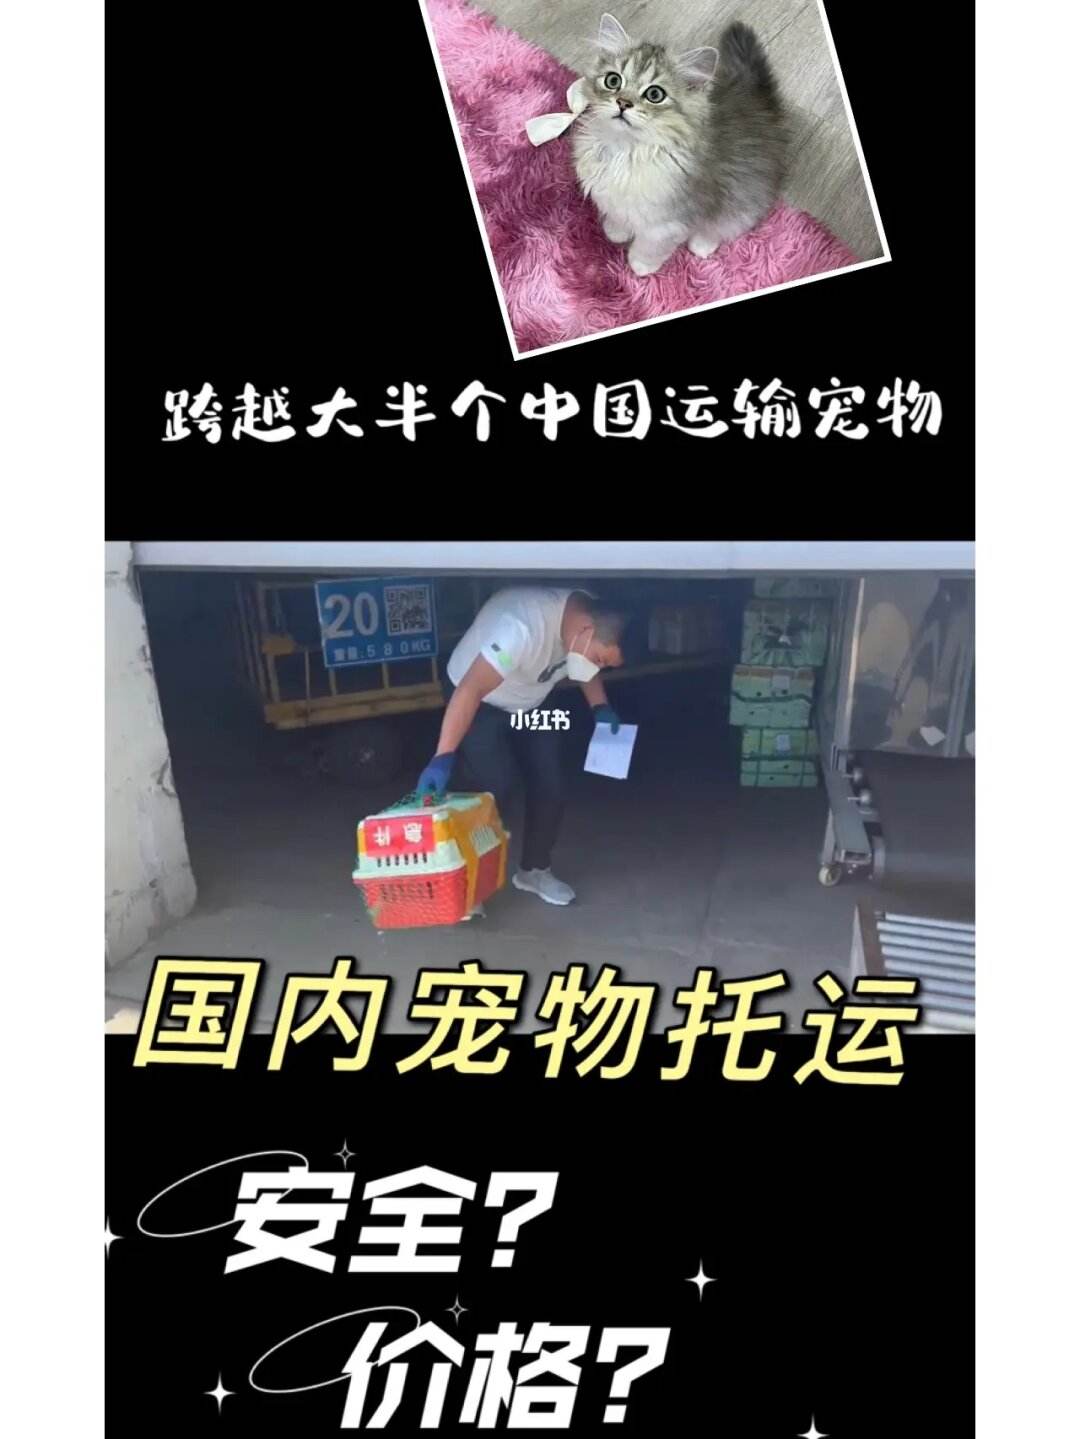 宠物托运到上海